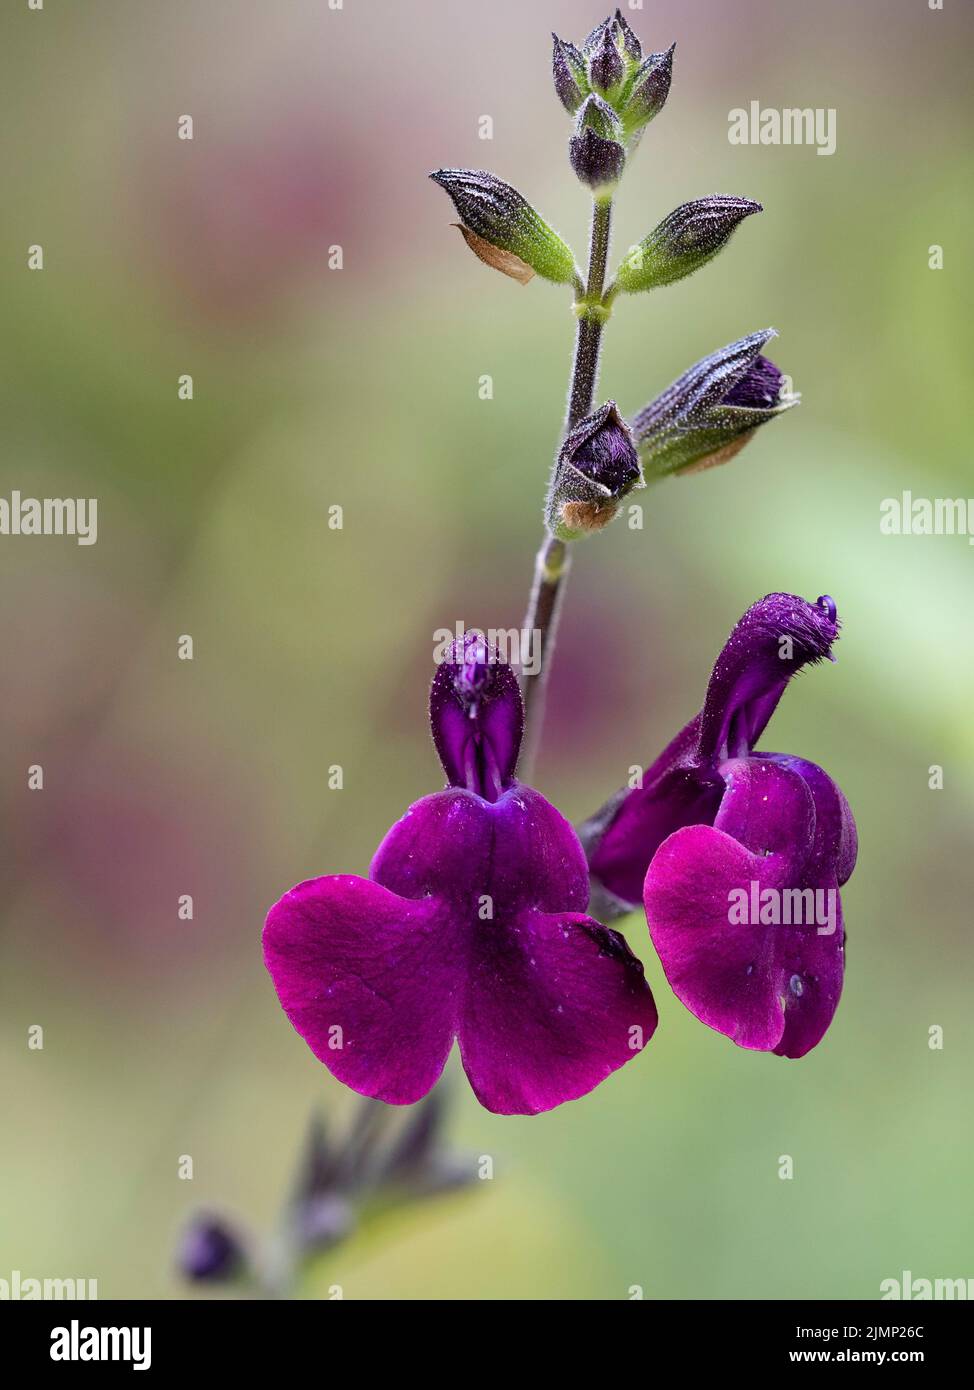 Fiori viola della salvia arbustia semidolorosa, Salvia x jamensis 'Nachtvlinder', sono trasportati dall'inizio dell'estate all'autunno Foto Stock